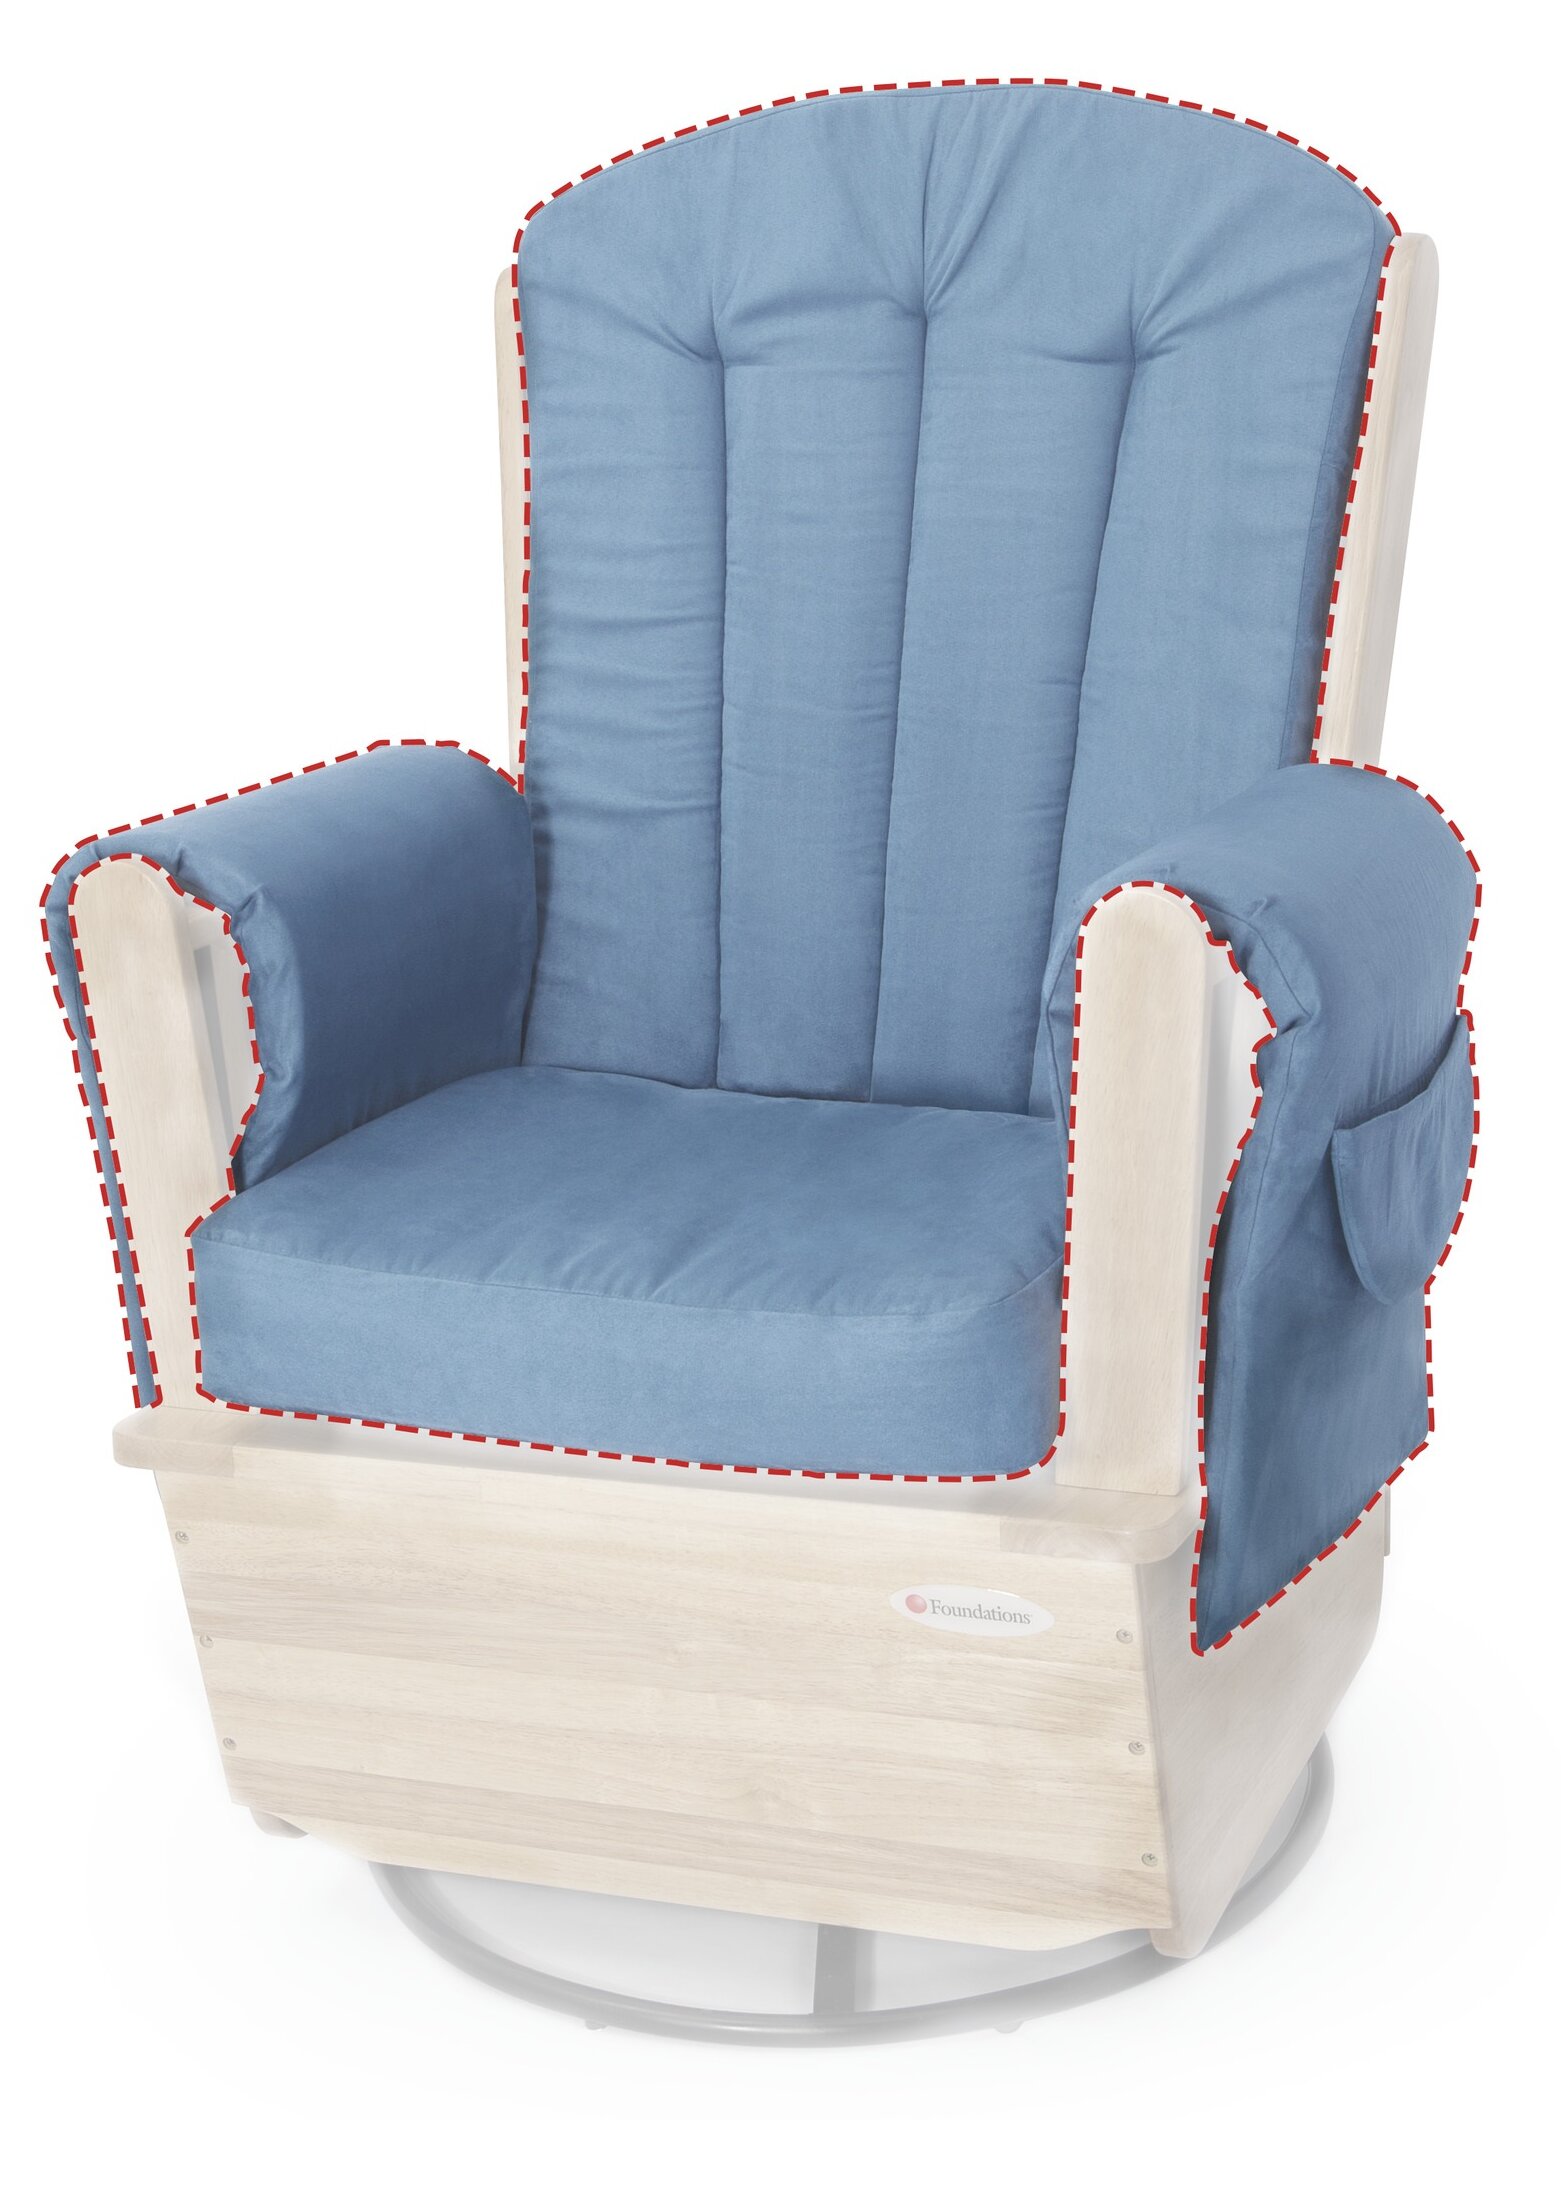 rocking chair cushions canada